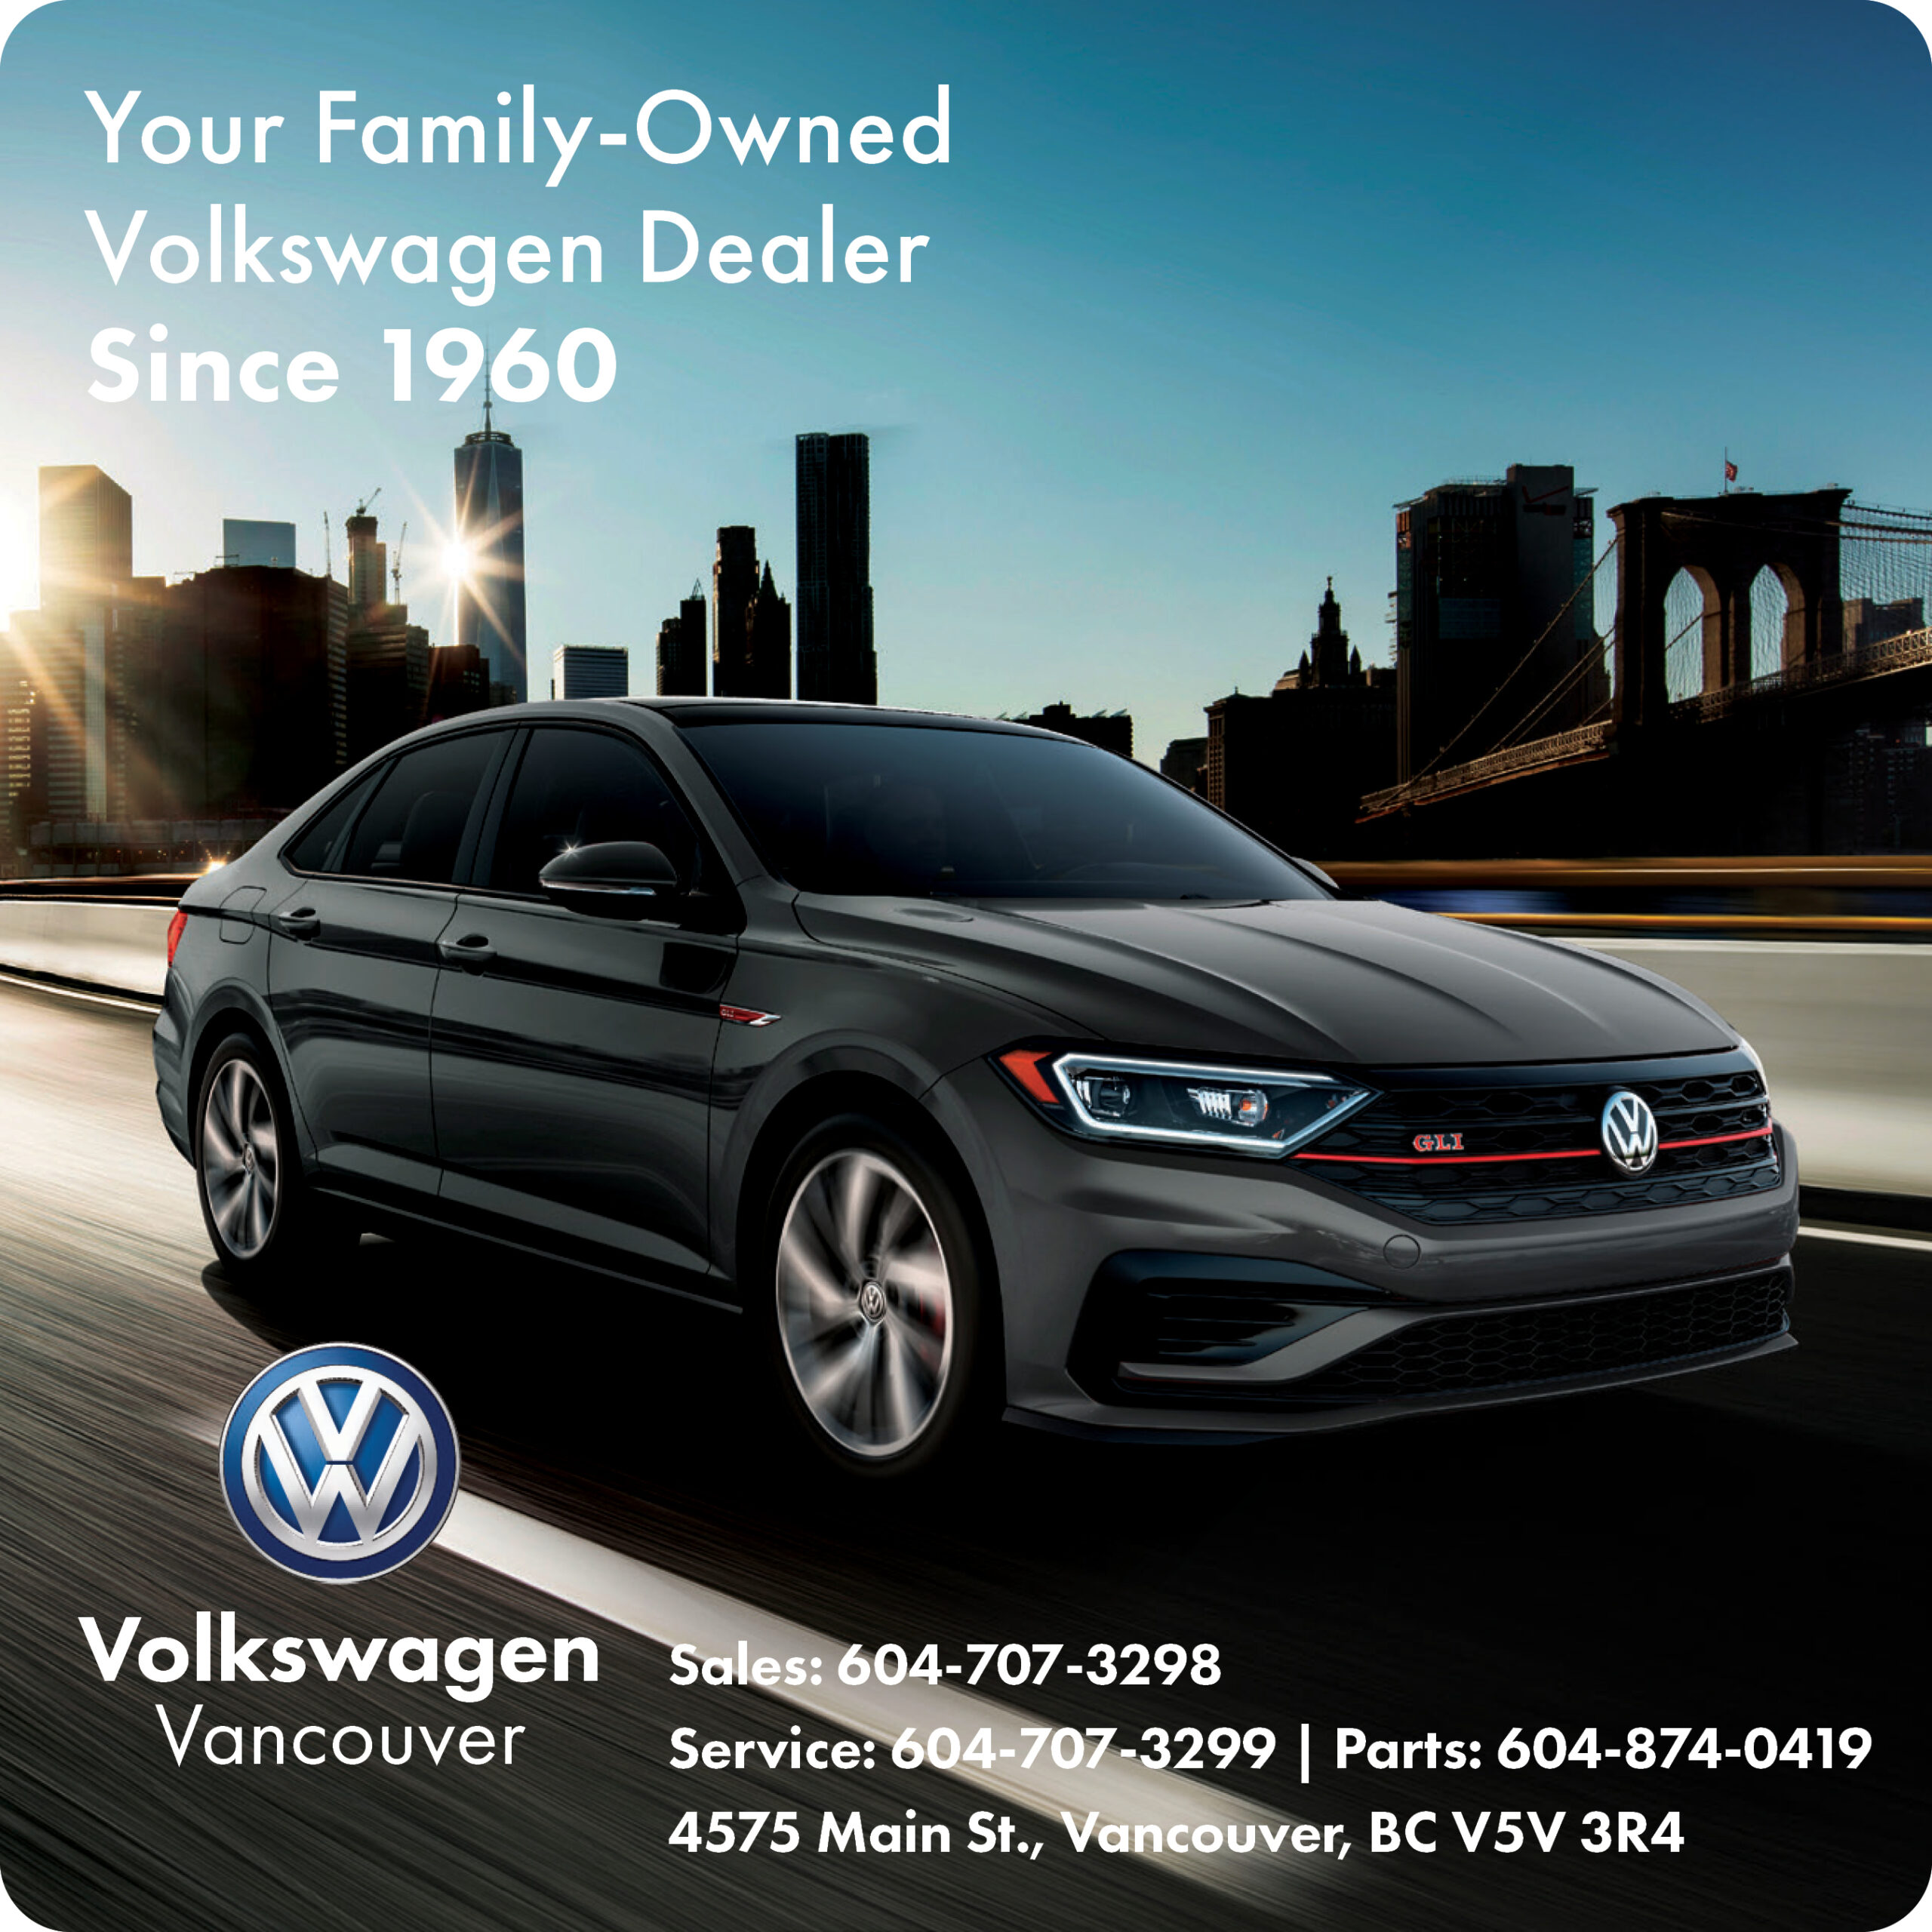 Vancouver Volkswagen